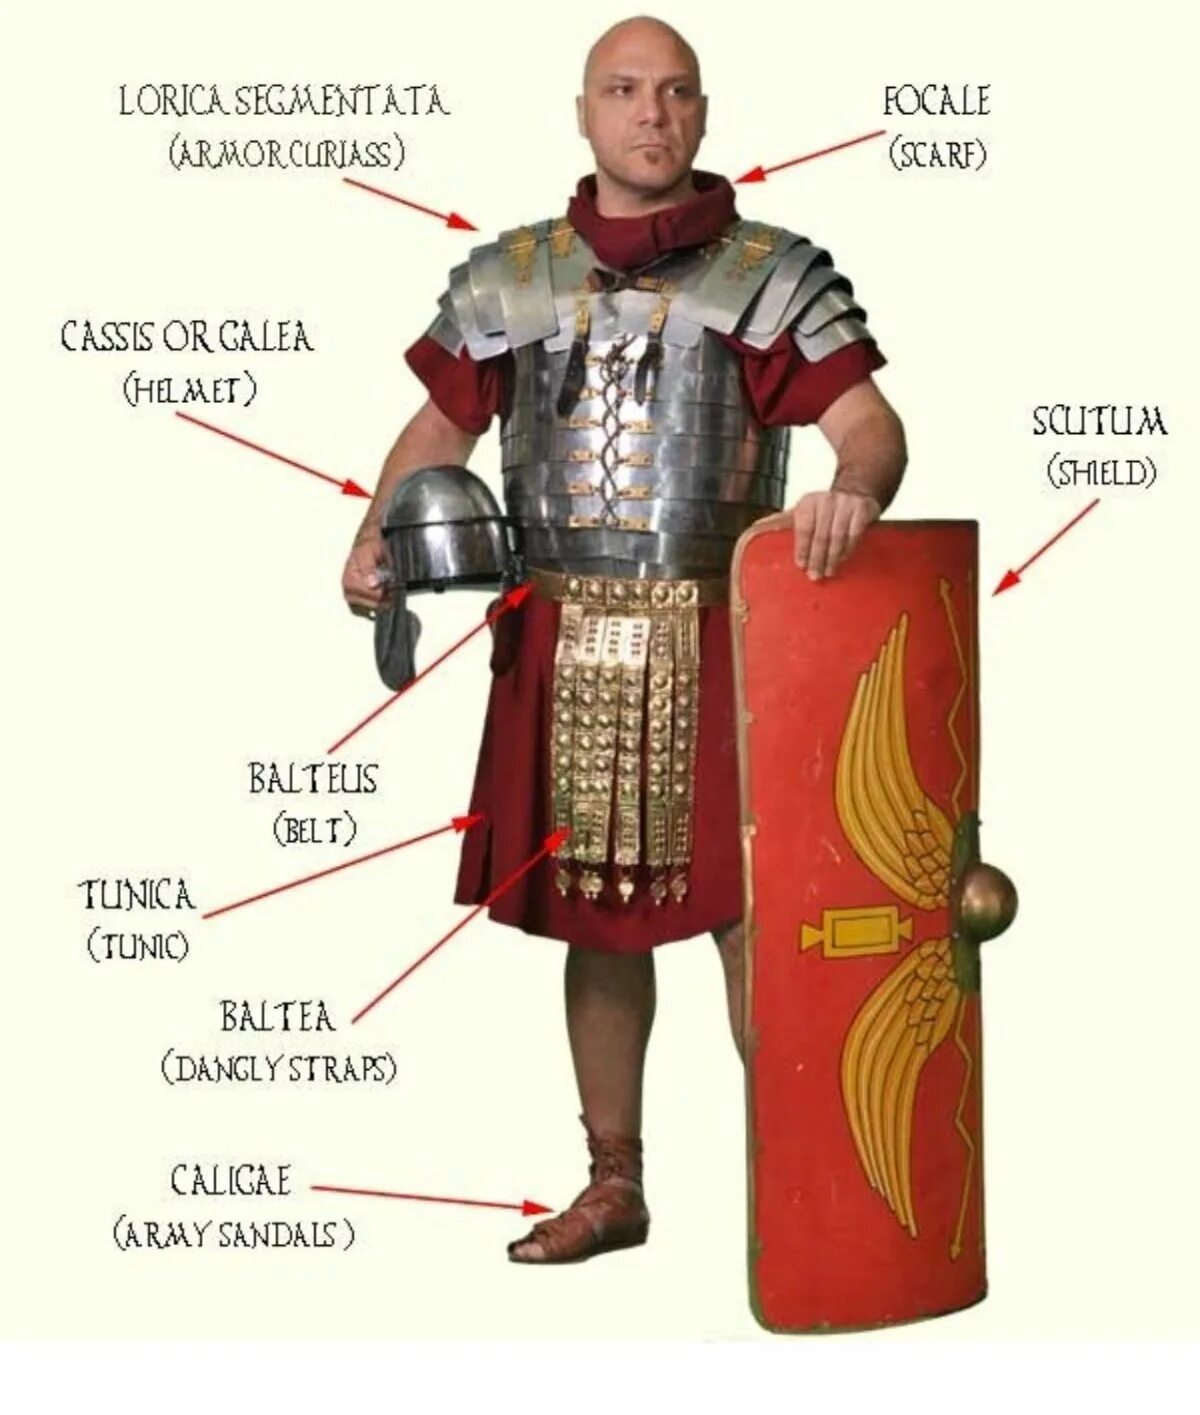 Основную массу римских воинов составляли. Римский легионер Лорика ХАМАТА. Римский легионер в Лорика сегментата. Костюм легионера древнего Рима. Римский доспех Лорика.